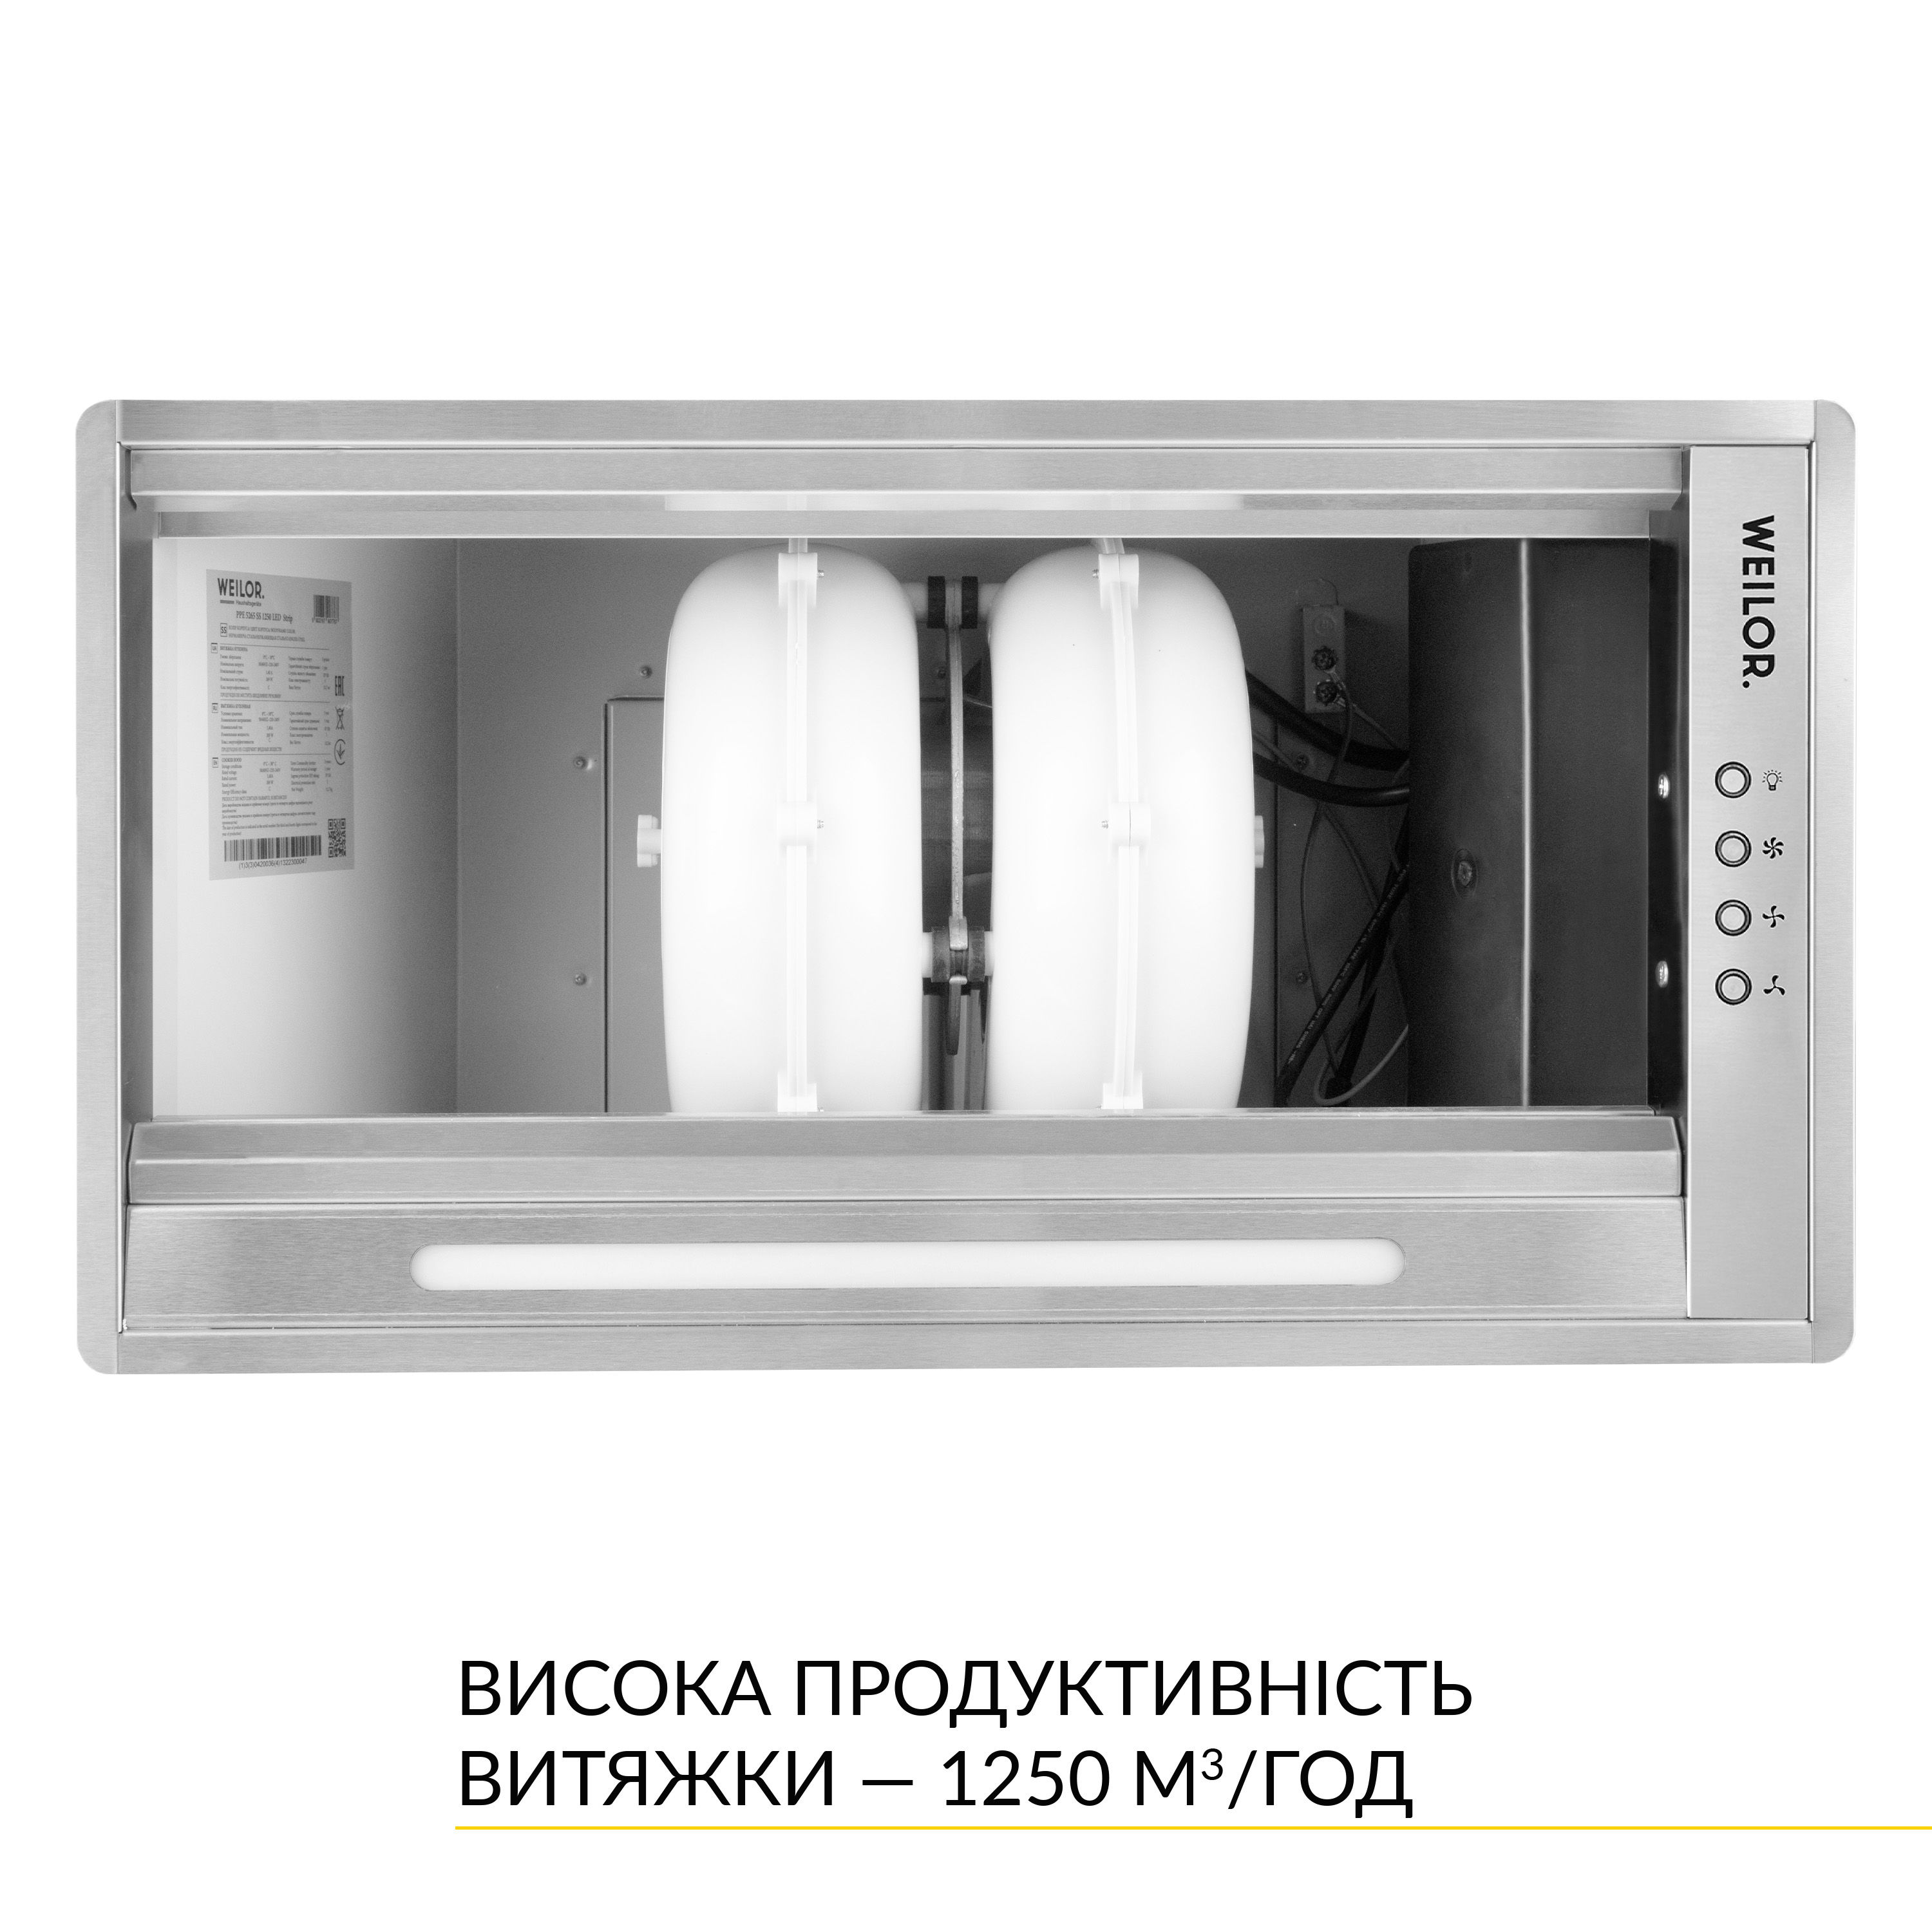 Кухонная вытяжка Weilor PPE 5265 SS 1250 LED Strip инструкция - изображение 6